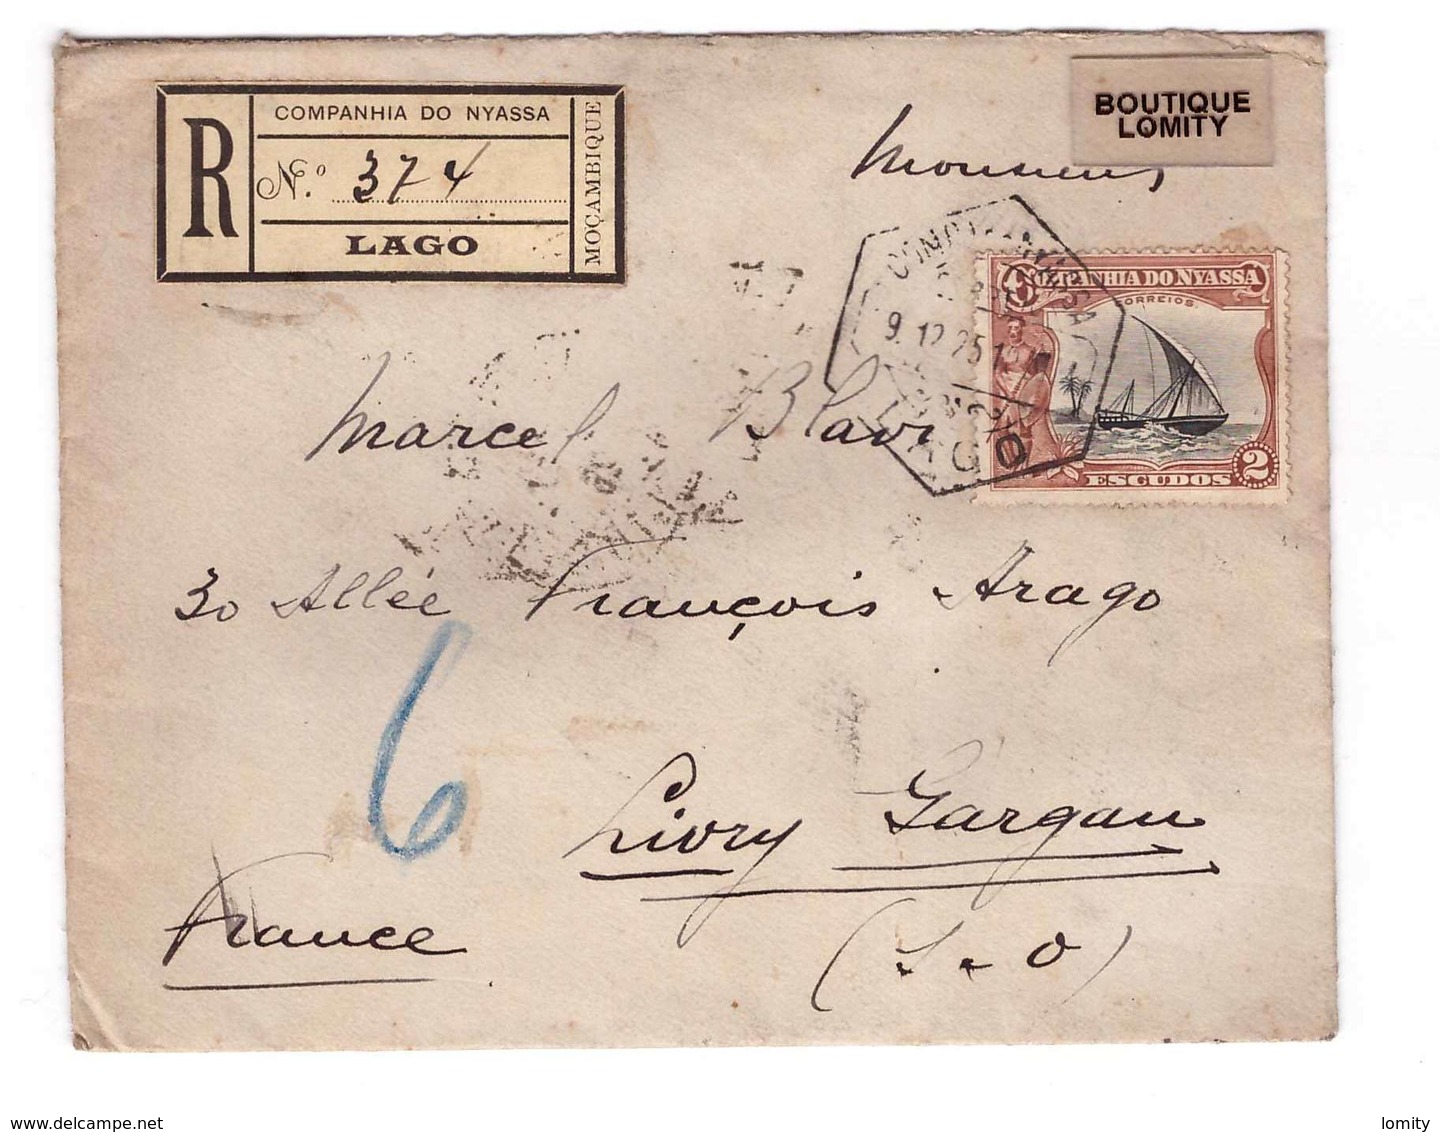 Companhia Do Nyassa Mocambique Mozambique Lettre Recommandée Pli Recommandé 9.12.1925 Pour Livry Gargan France Cachet - Nyassa